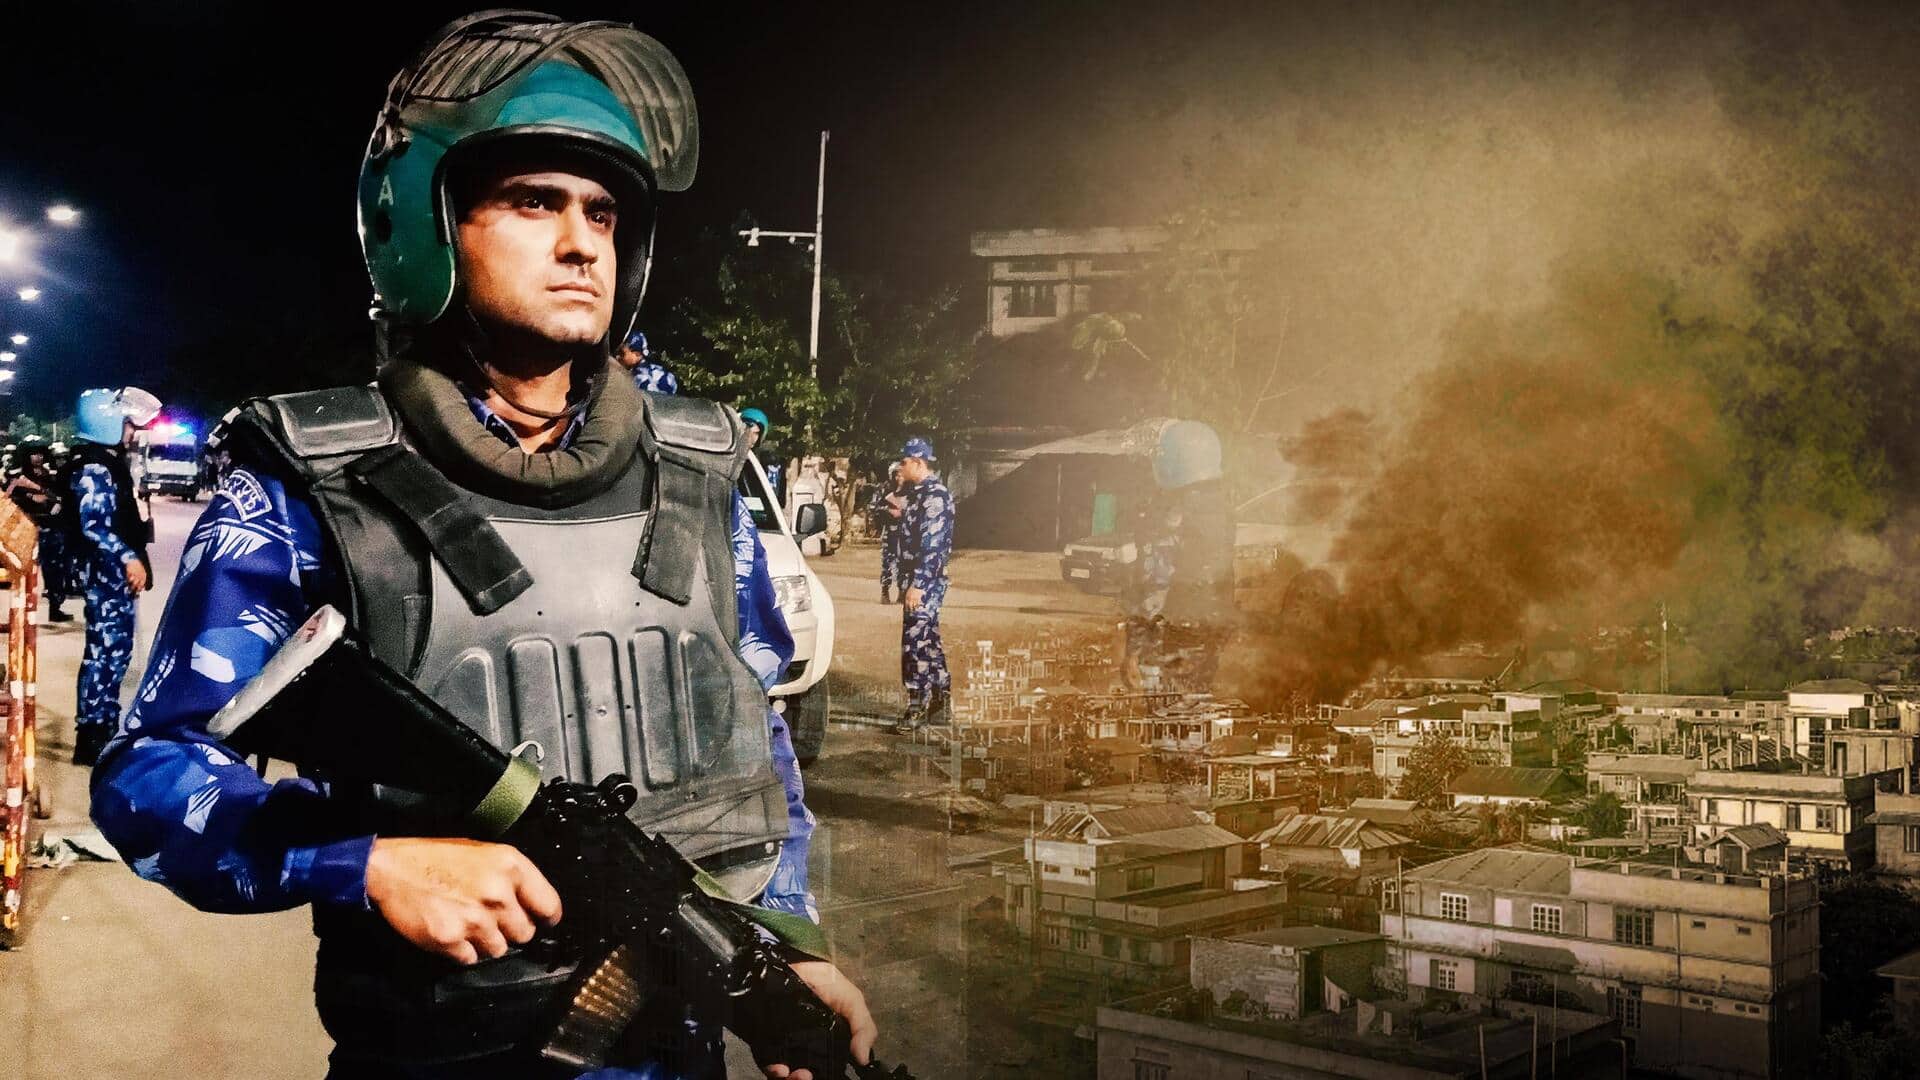 मणिपुर: भीड़ का पुलिस मुख्यालय पर हमला, 3 BSF जवान घायल; मुख्यमंत्री के खिलाफ मार्च निकला